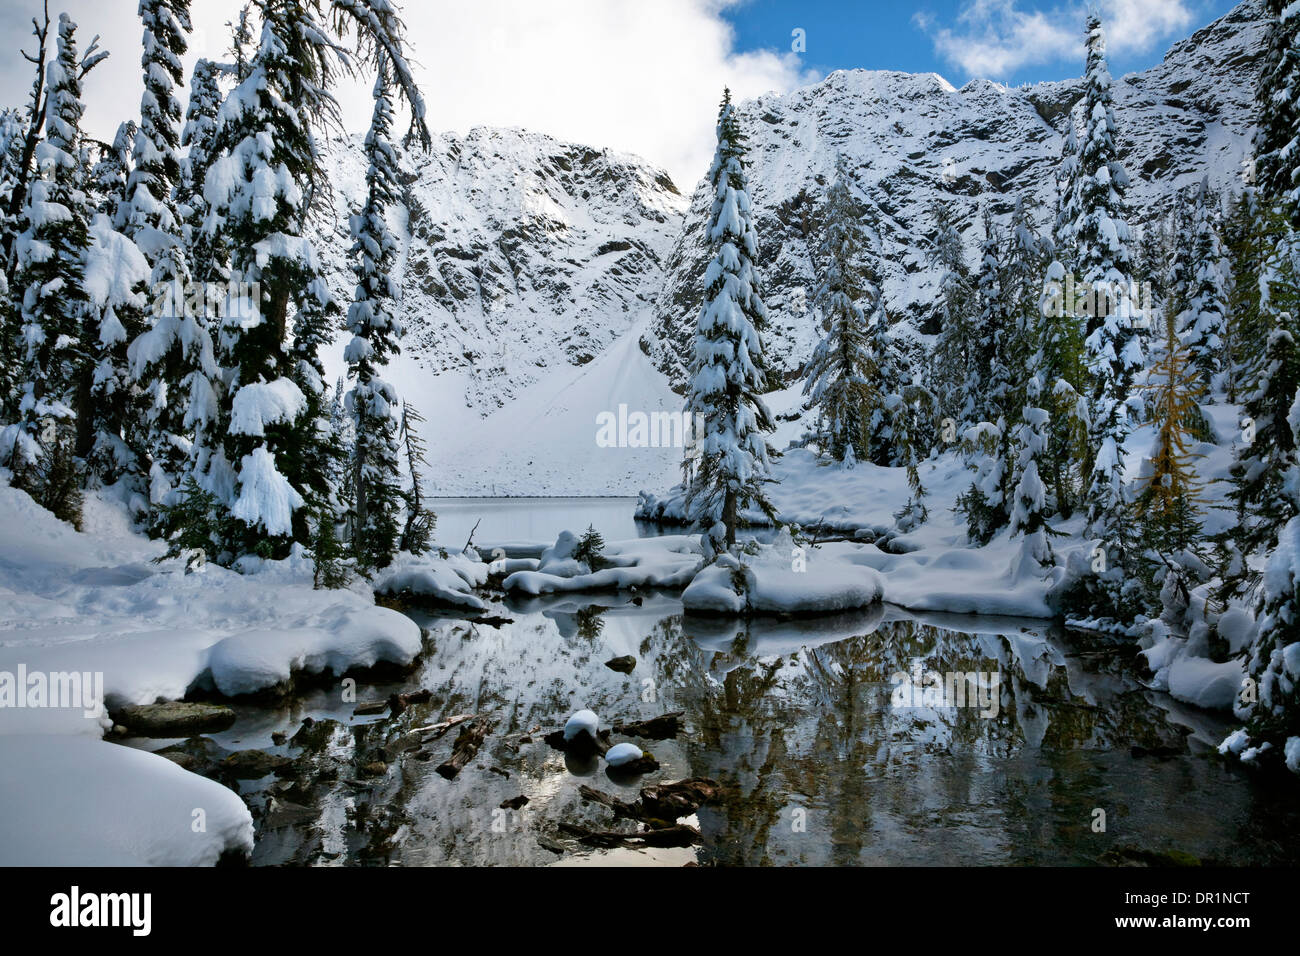 WA08763-00... WASHINGTON - Blue Lake nach einem frühen Saison Schnee Sturm Abschnitt North Cascades des Okanogan National Forest. Stockfoto